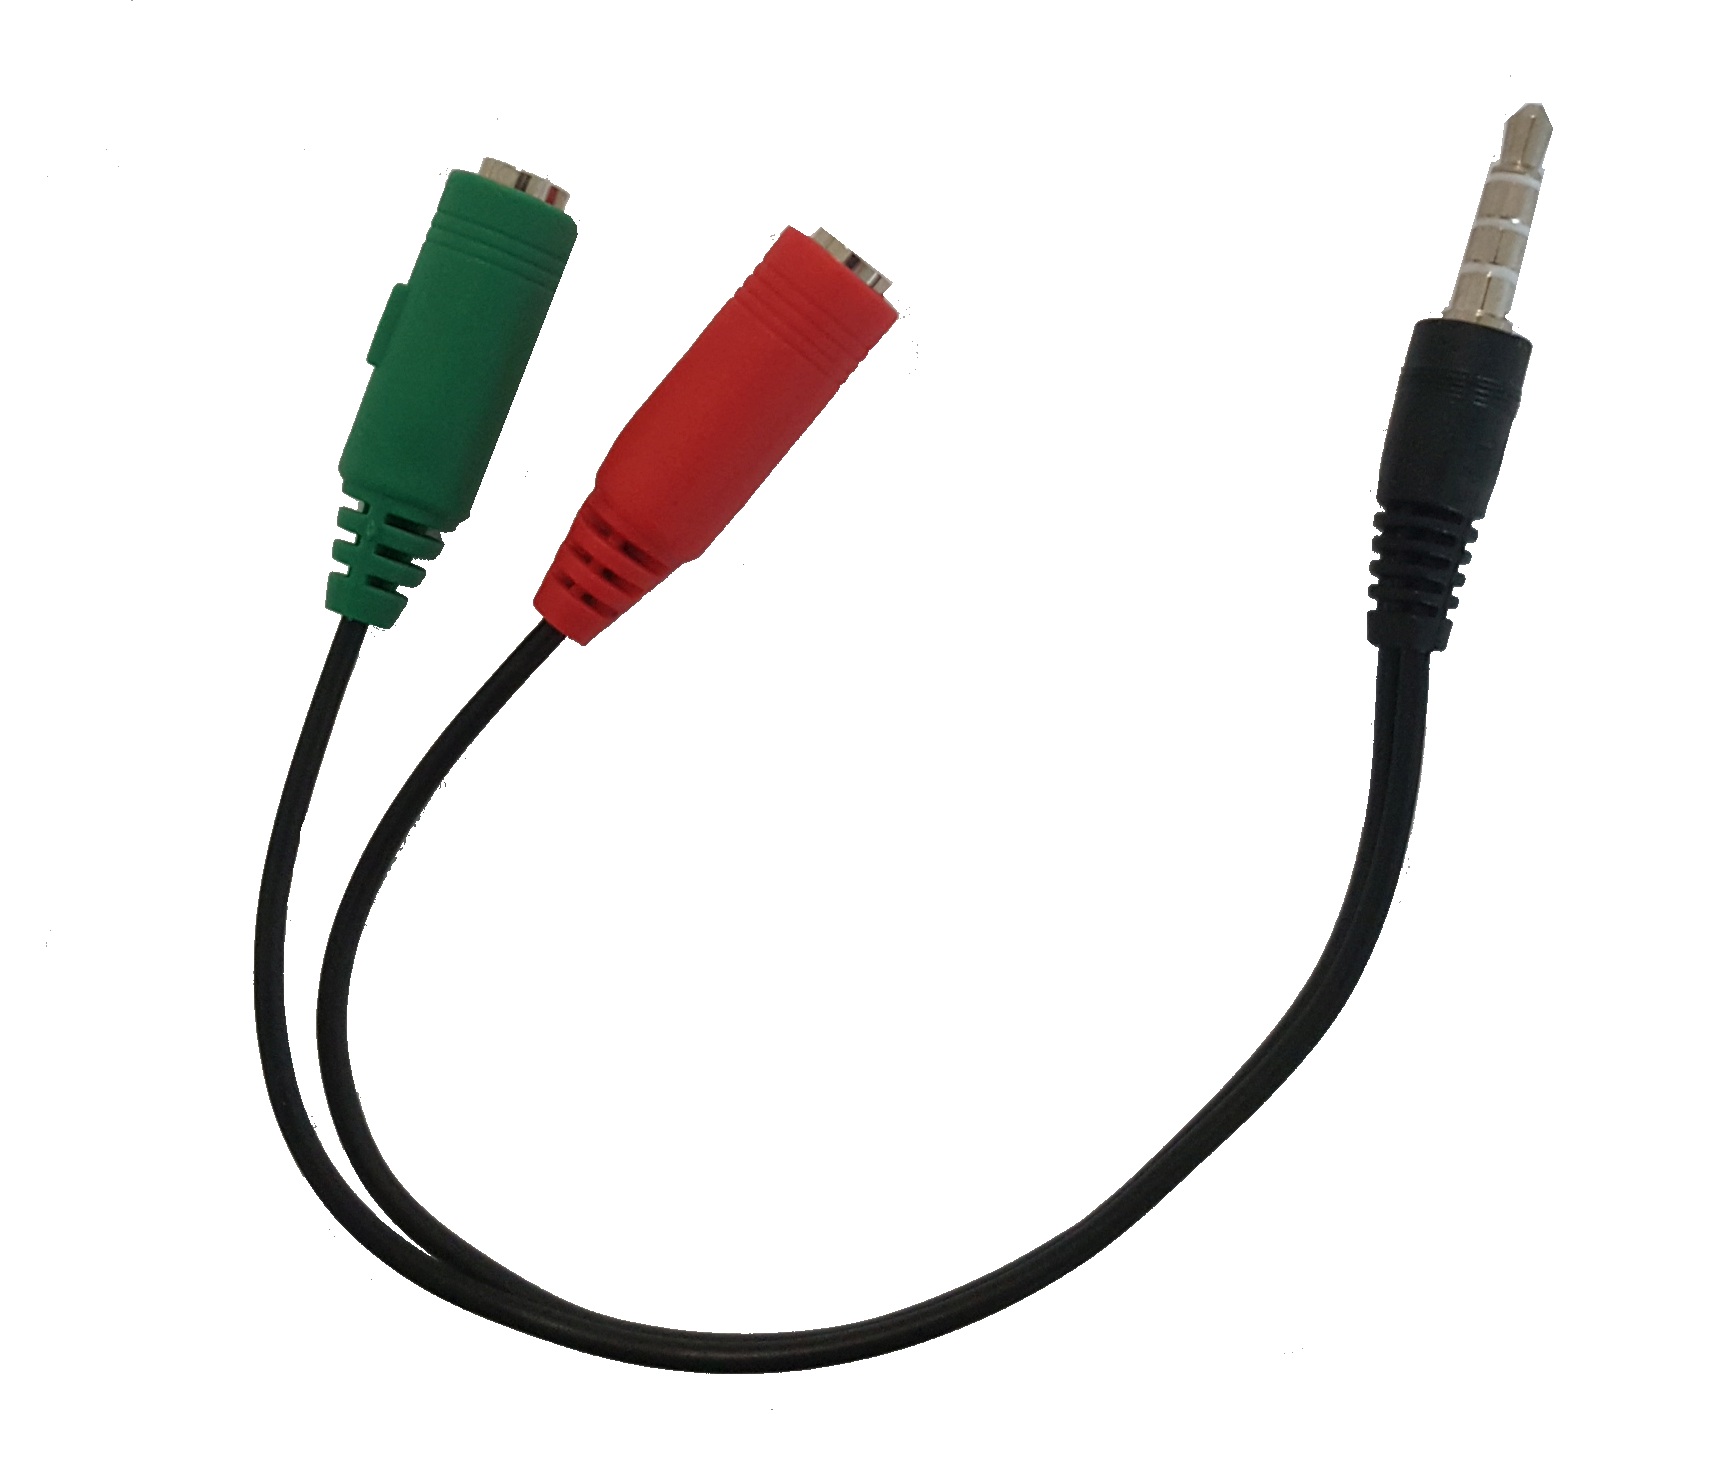 Sdoppiatore audio per cuffie e microfono con doppio connettore audio 3,5mm su singolo connettore audio 3,5mm smartphone - 1 maschio 3,5mm / 2 femmine 3,5mm